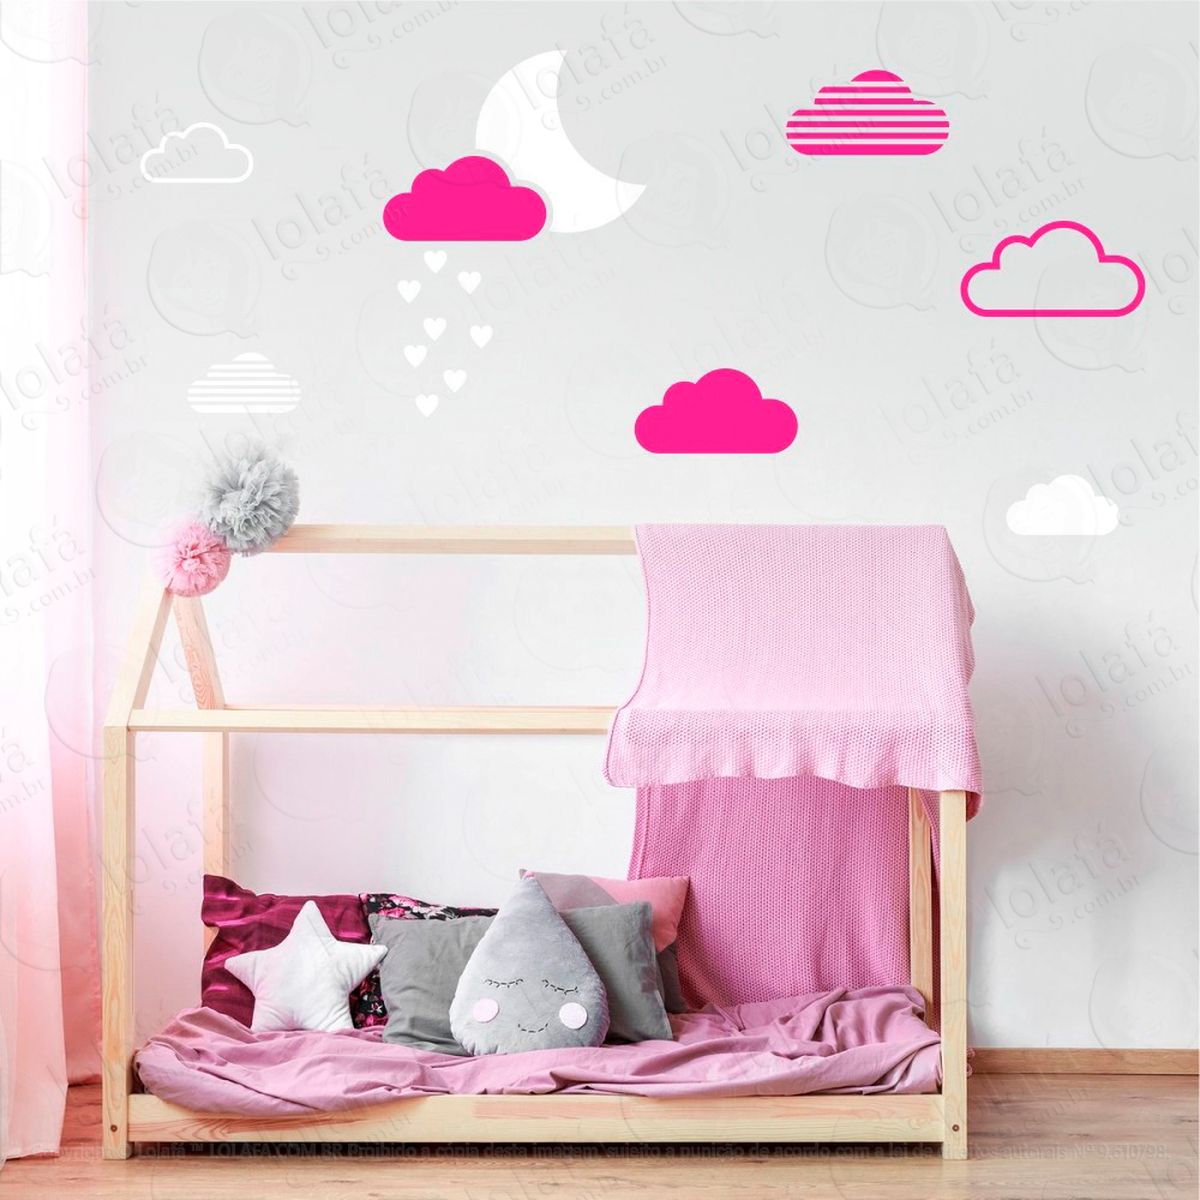 adesivos lua e nuvens 15 peças adesivos para quarto de bebê infantil - mod:887